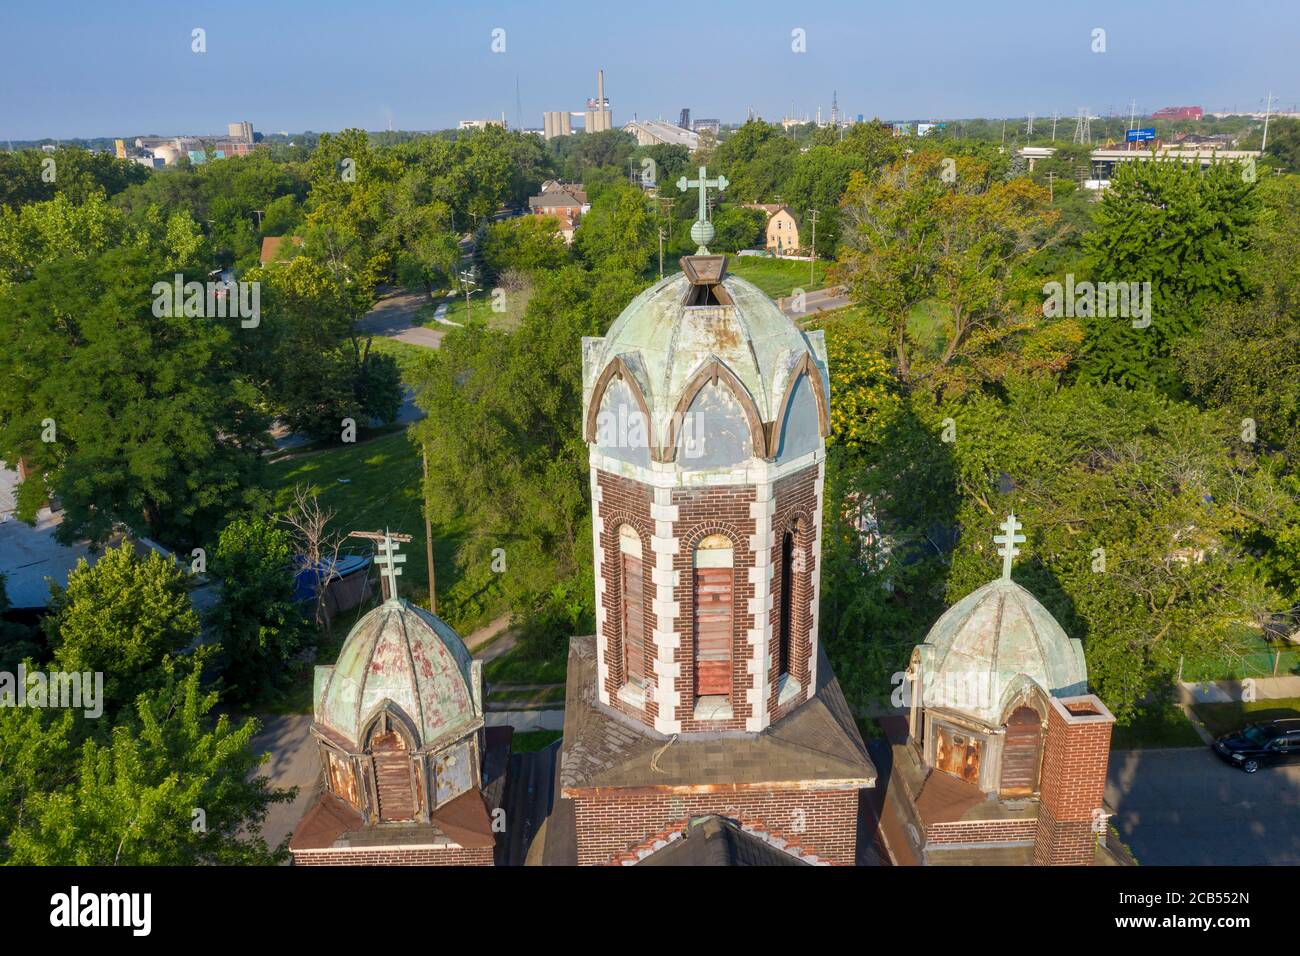 Detroit, Michigan - l'église orthodoxe Szent Janos a servi des dizaines de milliers d'immigrants hongrois qui se sont installés dans le quartier de Delray. Le churc Banque D'Images